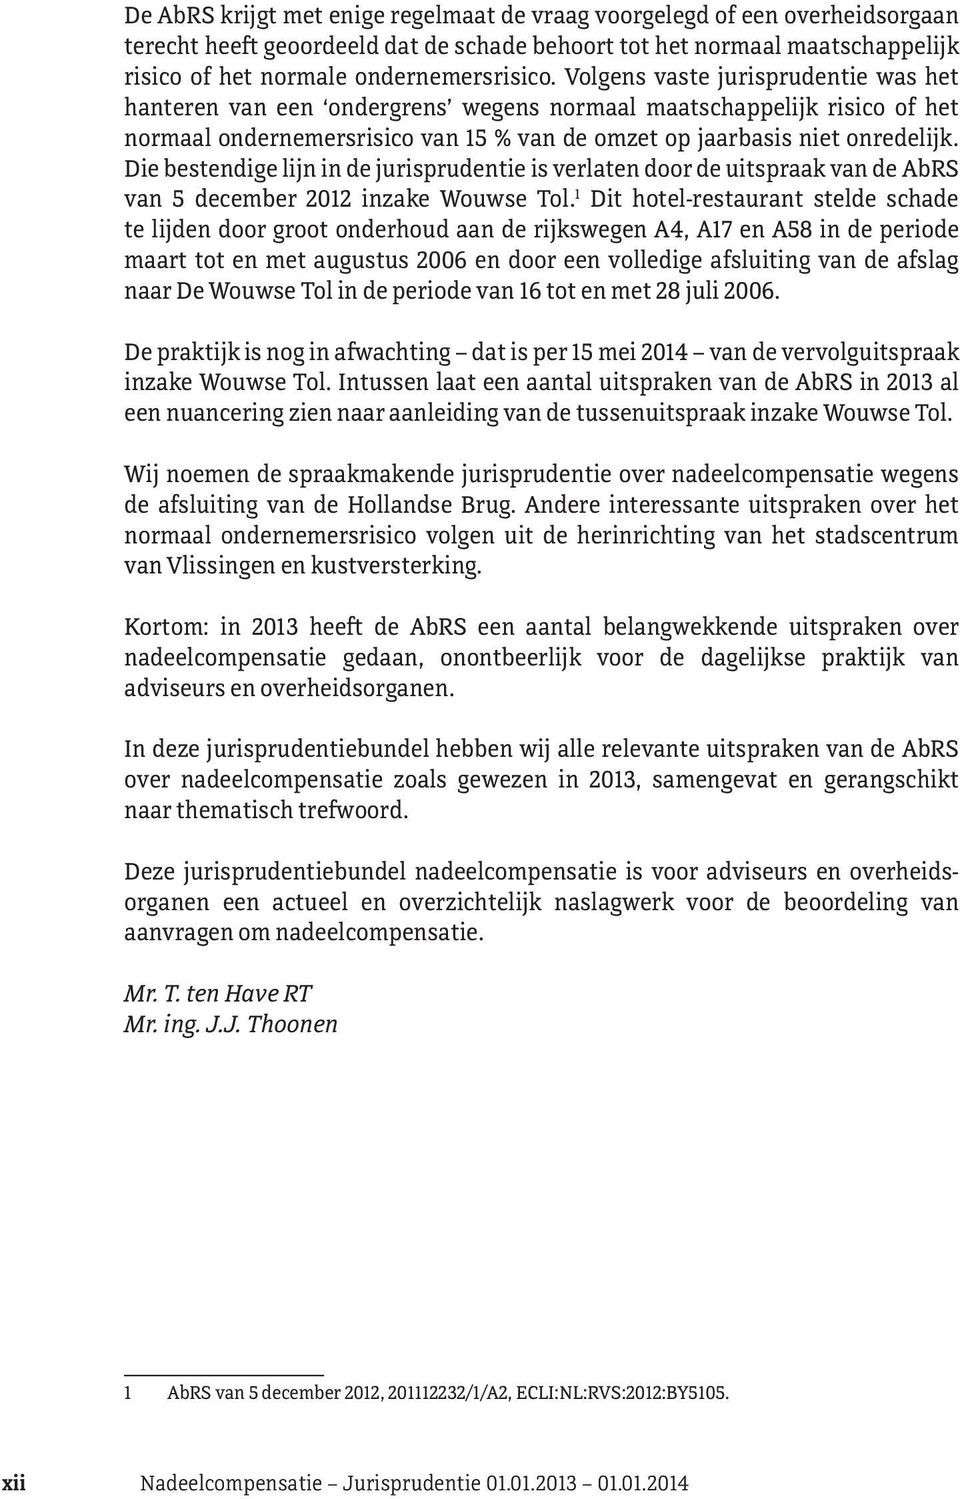 Die bestendige lijn in de jurisprudentie is verlaten door de uitspraak van de AbRS van 5 december 2012 inzake Wouwse Tol.